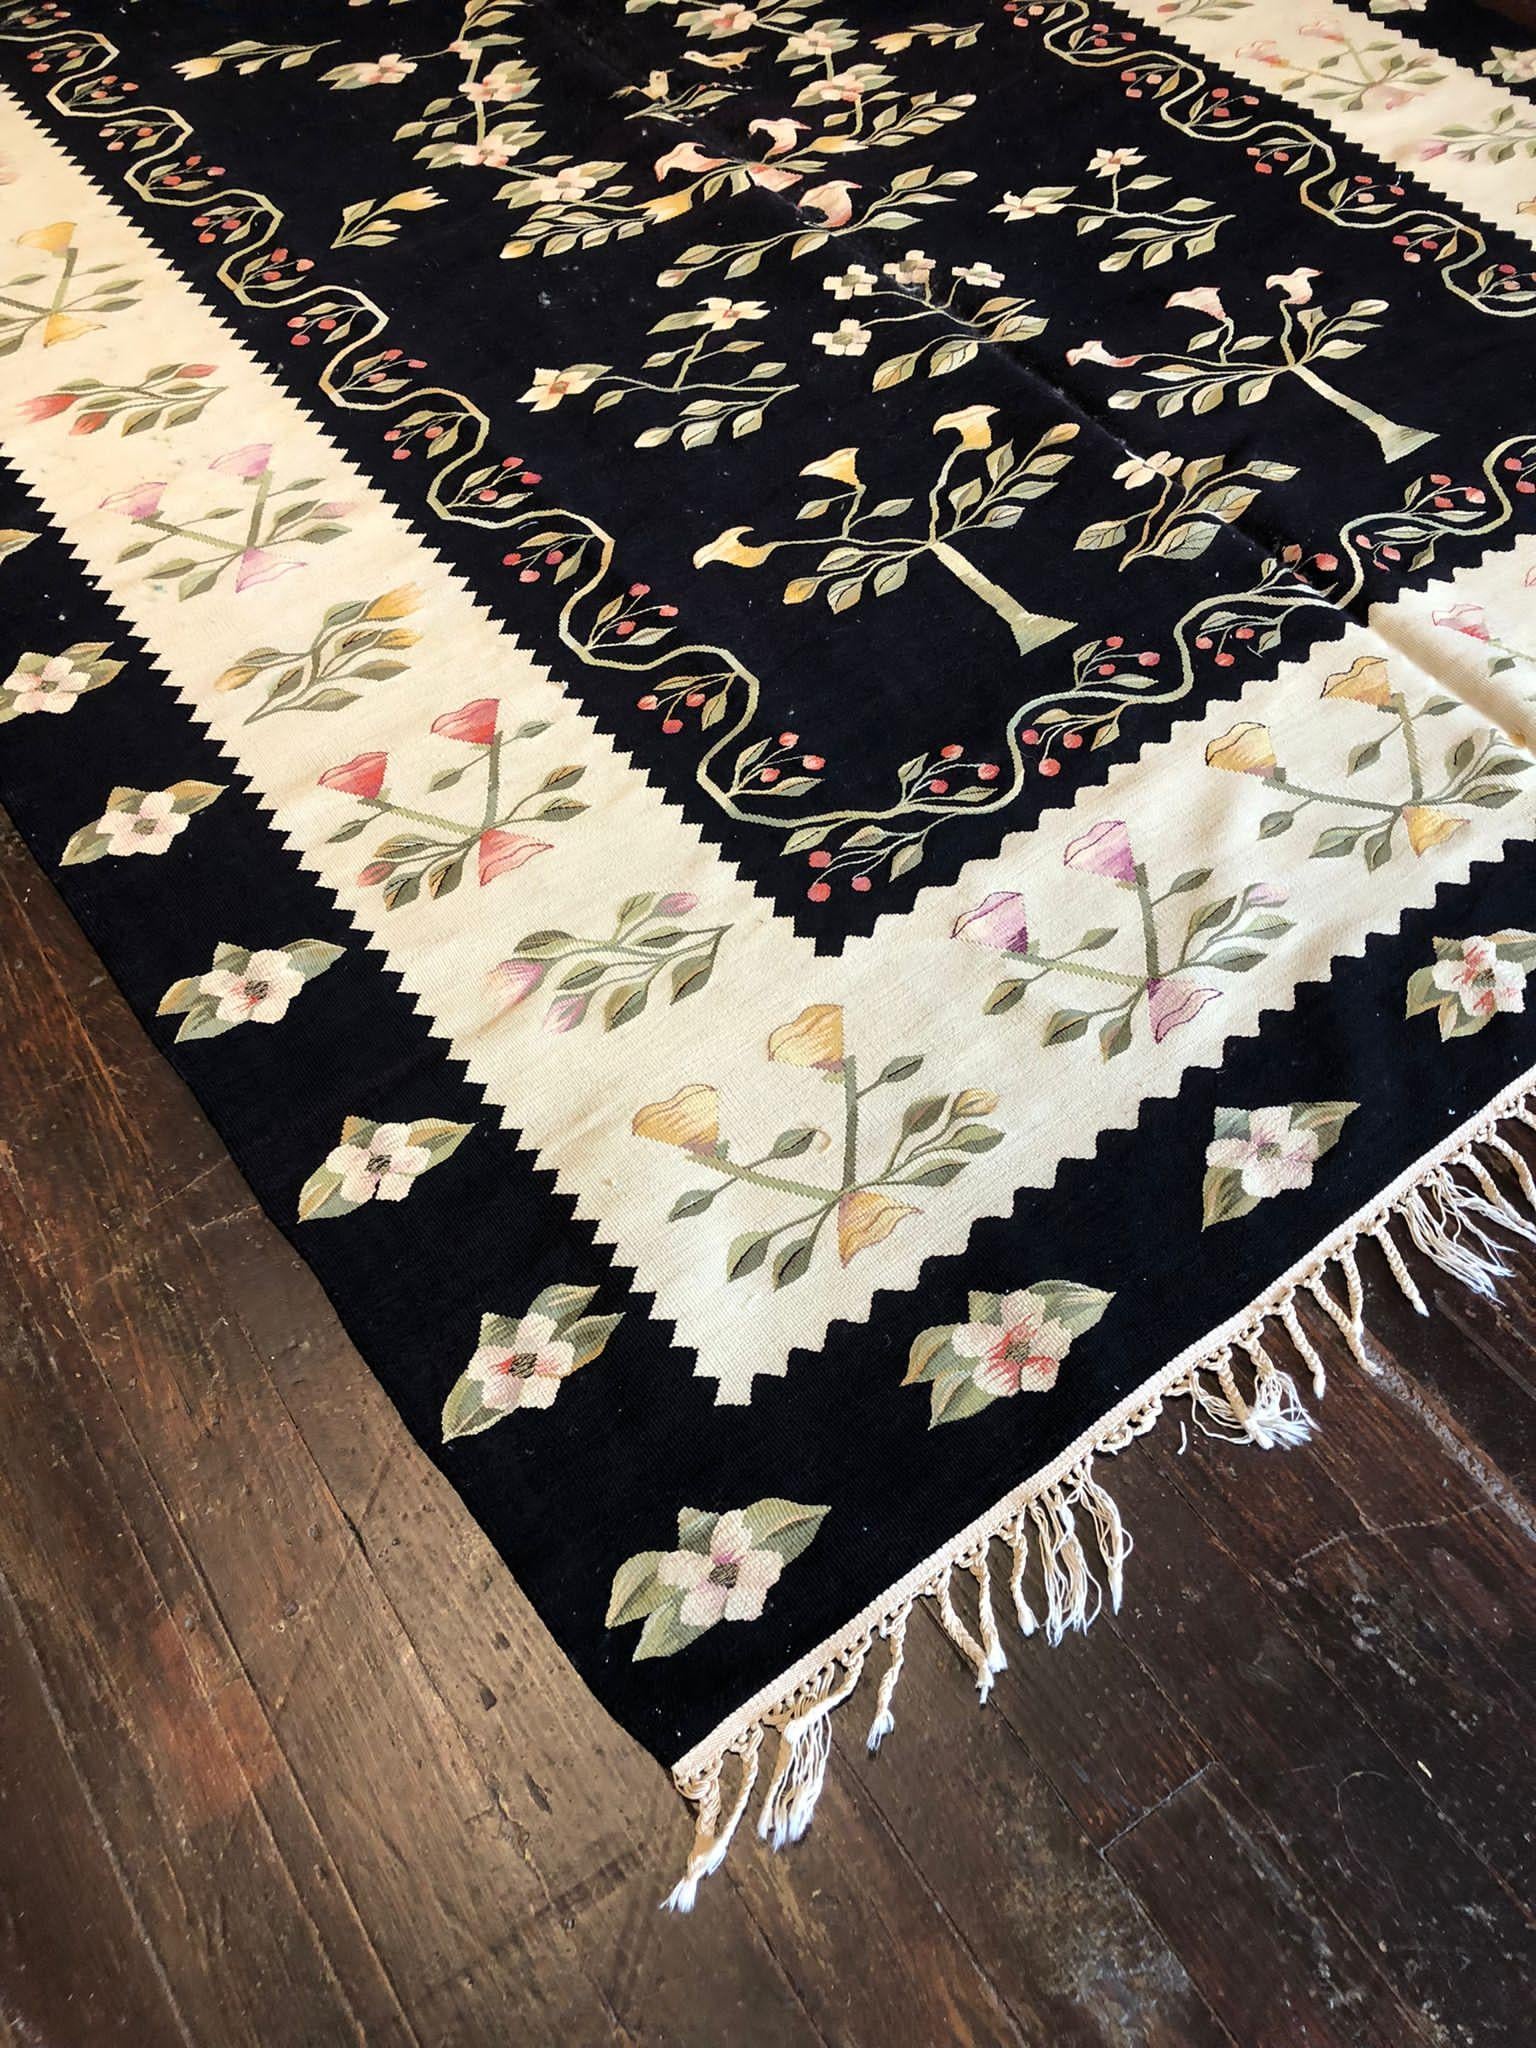  Der Vintage-Kilim ist eine charakteristische und charmante Art von flachgewebten Teppichen, die für ihre geometrischen Muster und leuchtenden Farben bekannt sind. Dieser besondere Kelim, der 6 Fuß 8 Zoll mal 10 Fuß misst, ist ein fesselndes Stück